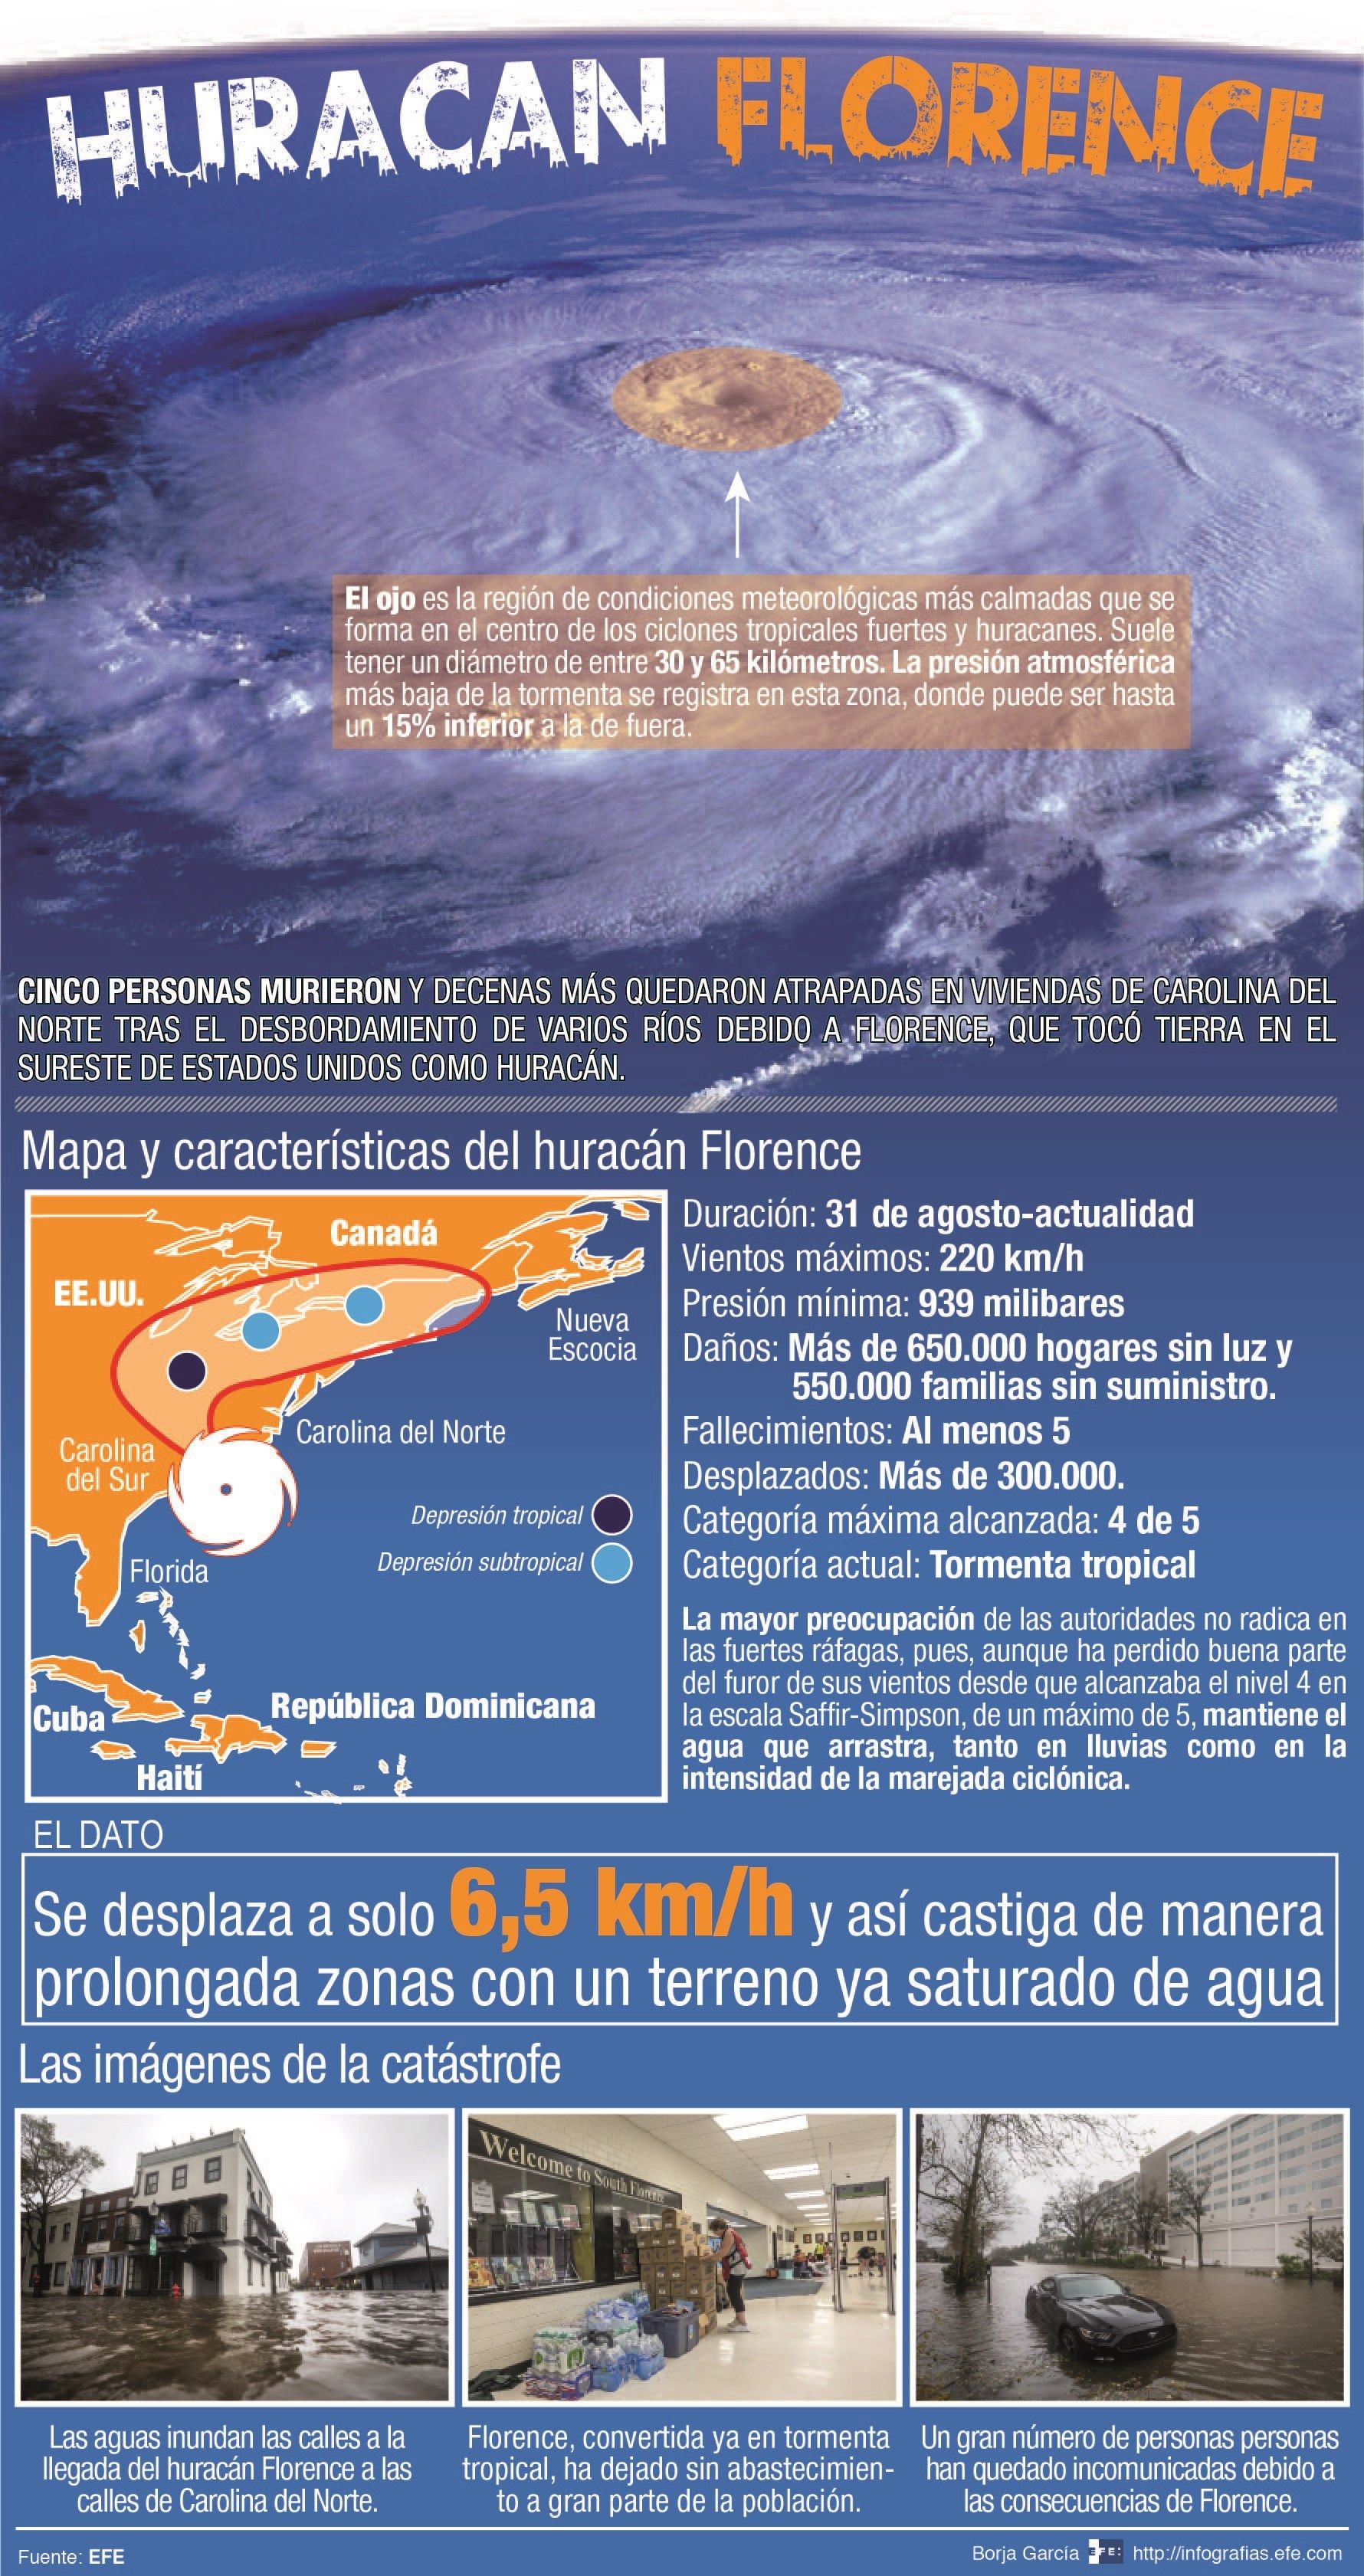 El huracán Florence impacta en la costa sureste de EEUU